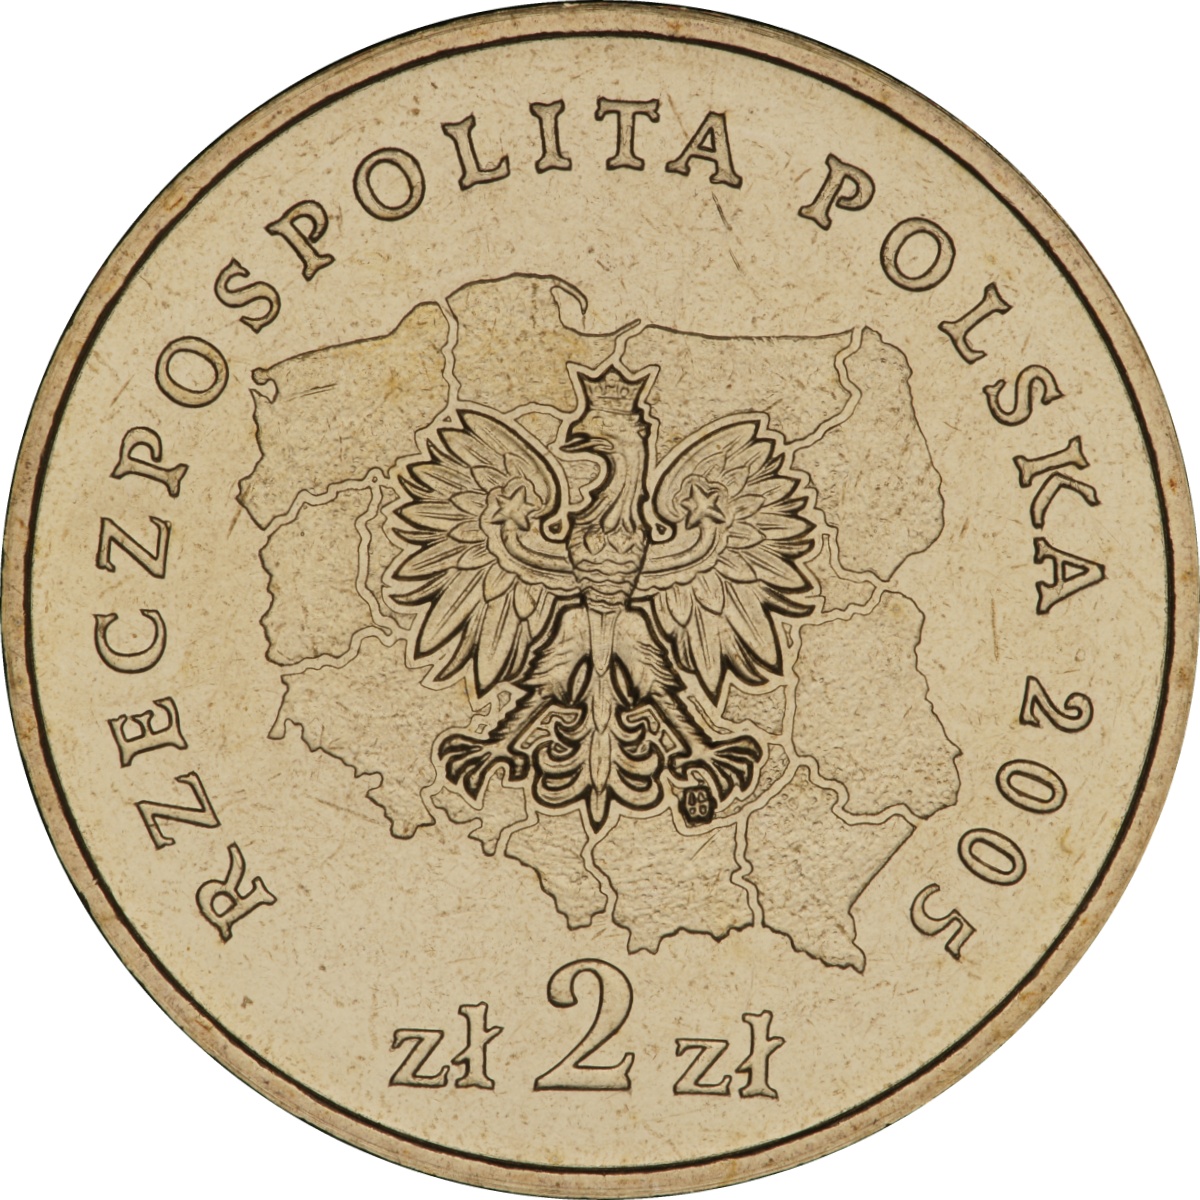 2zl-okolicznosciowe-wojewodztwo-warminsko-mazurskie-awers-monety